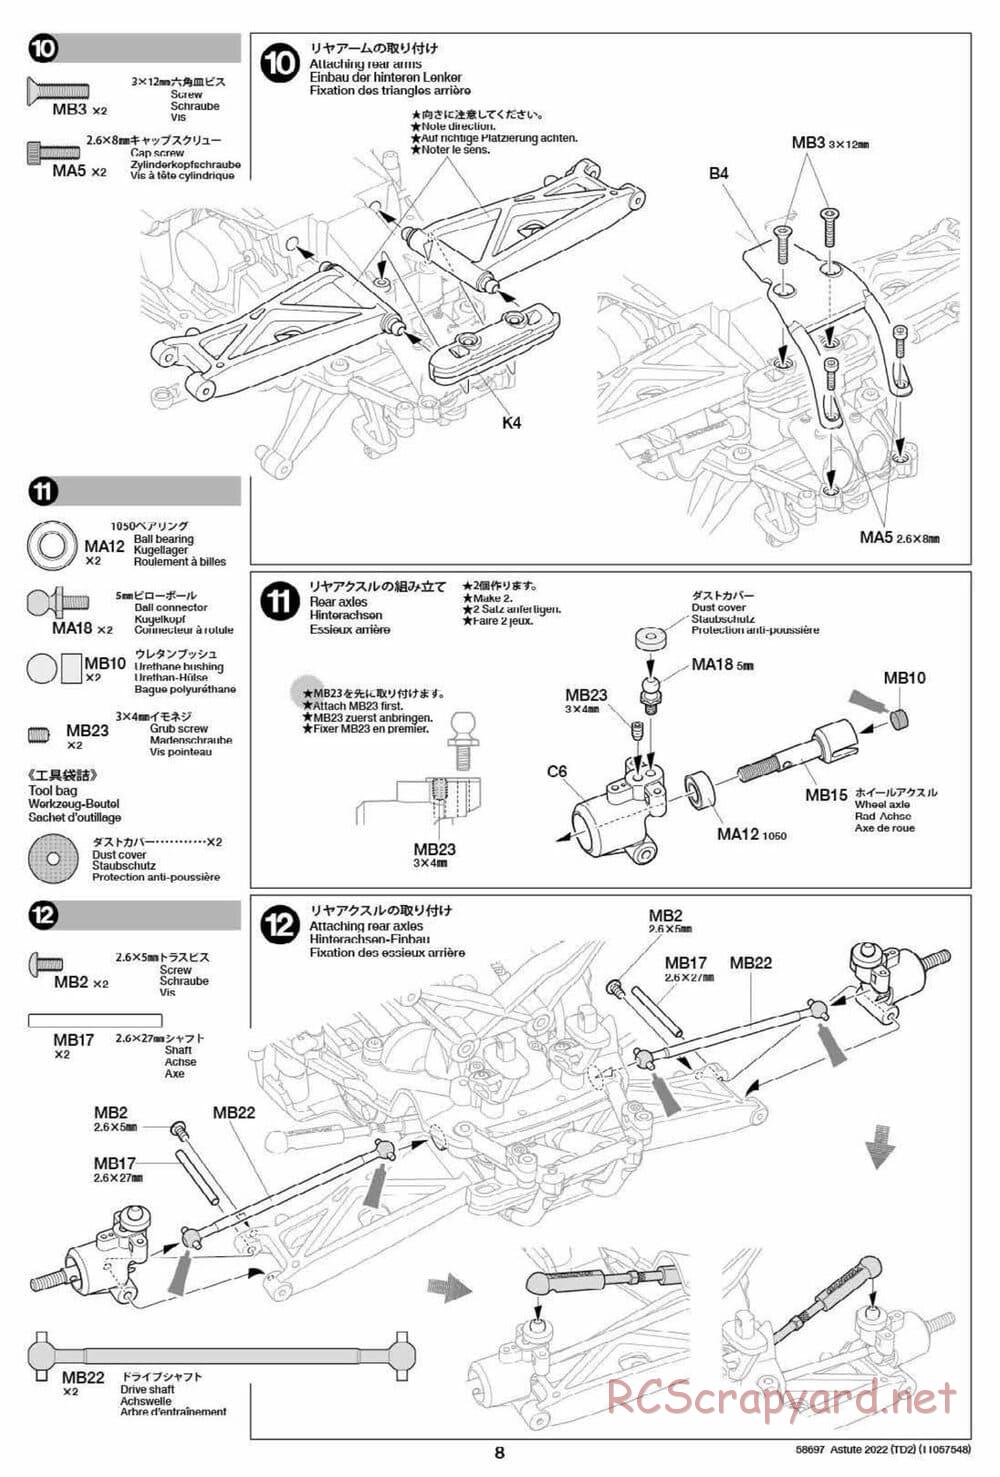 Tamiya - Astute 2022 - TD2 Chassis - Manual - Page 8